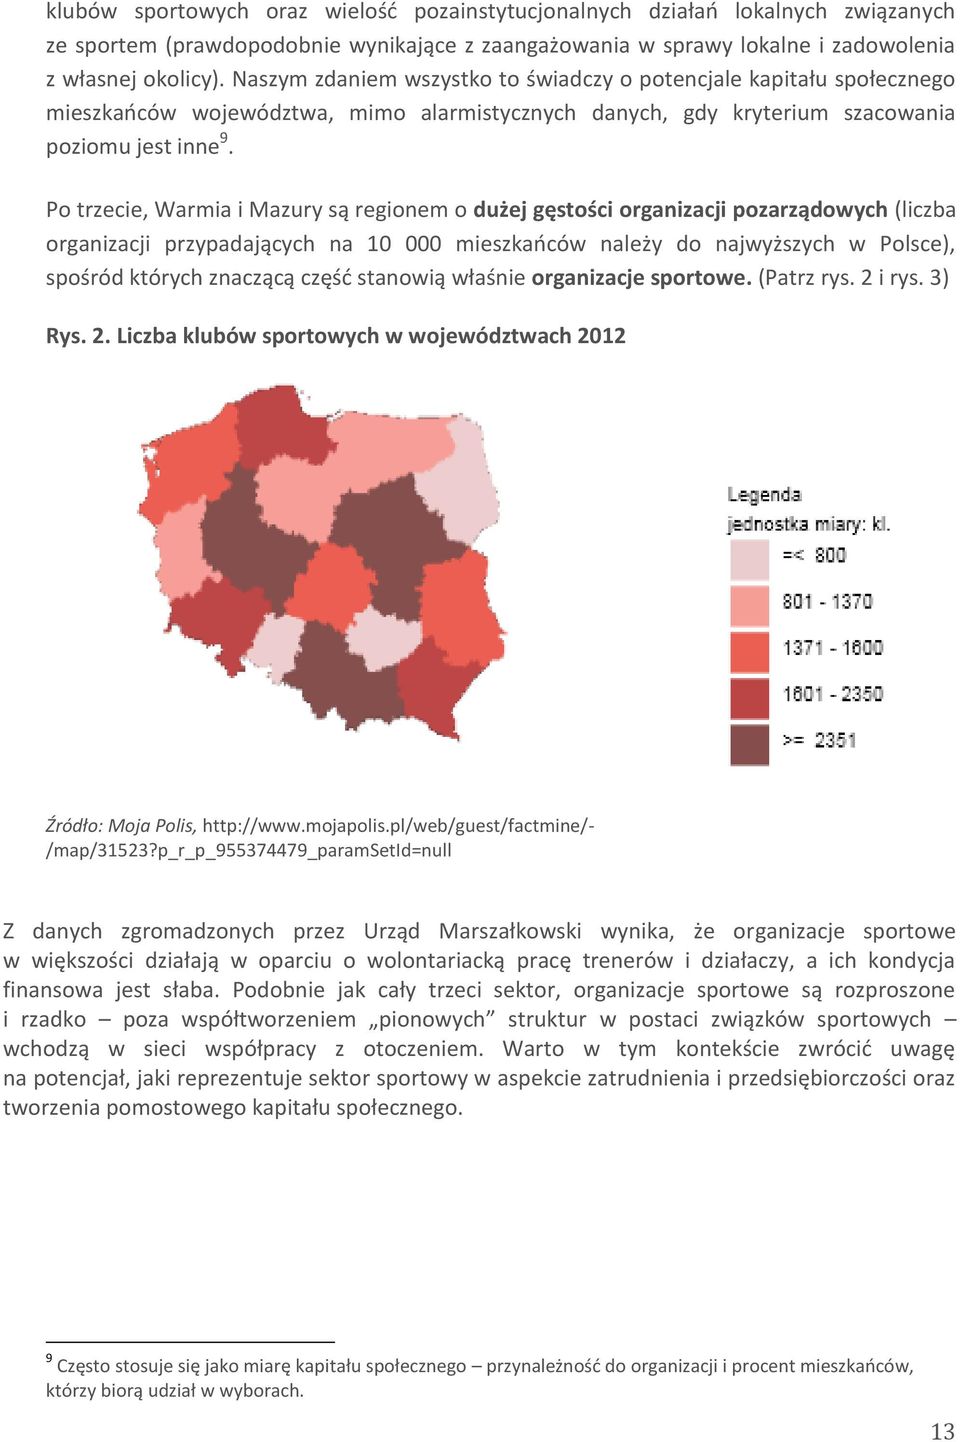 Po trzecie, Warmia i Mazury są regionem o dużej gęstości organizacji pozarządowych (liczba organizacji przypadających na 10 000 mieszkańców należy do najwyższych w Polsce), spośród których znaczącą